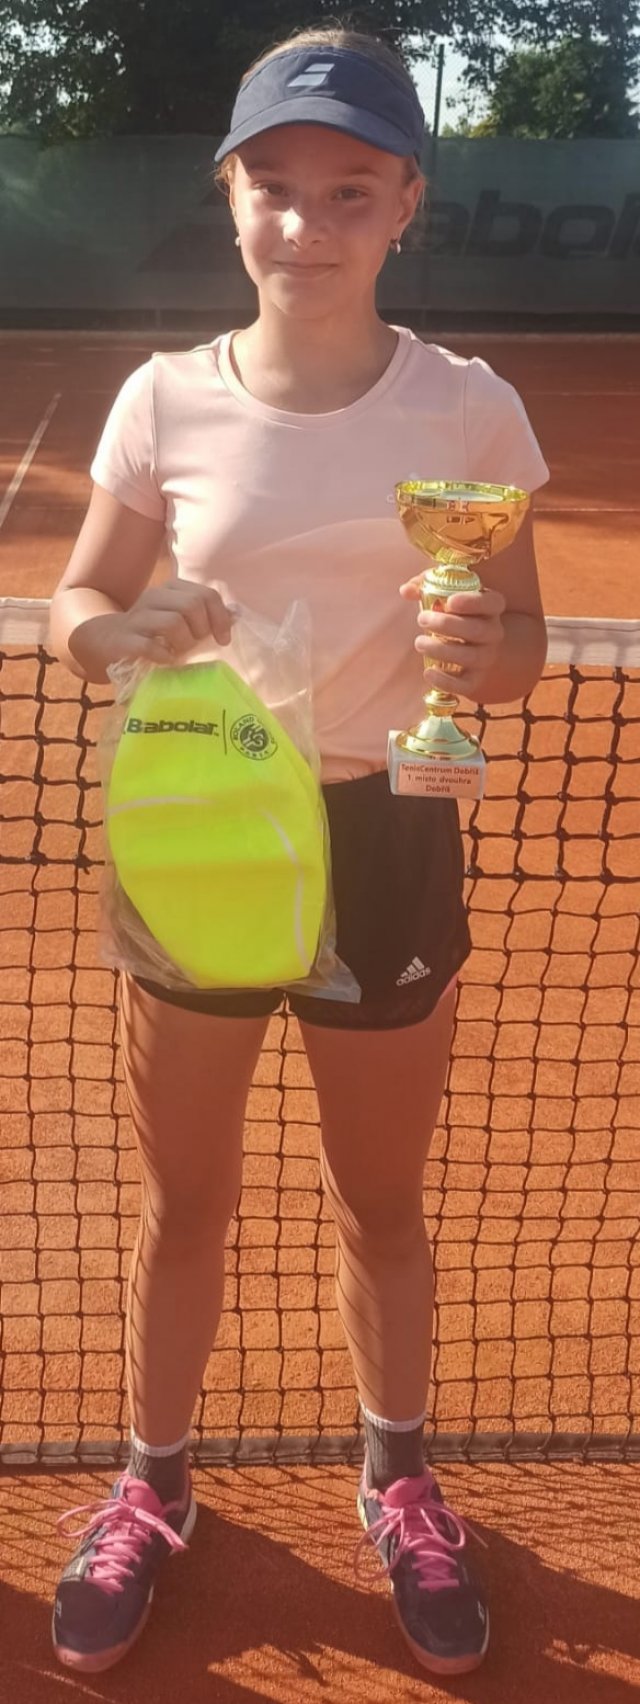 Sofi Kubíková vybojovala svůj první turnajový titul